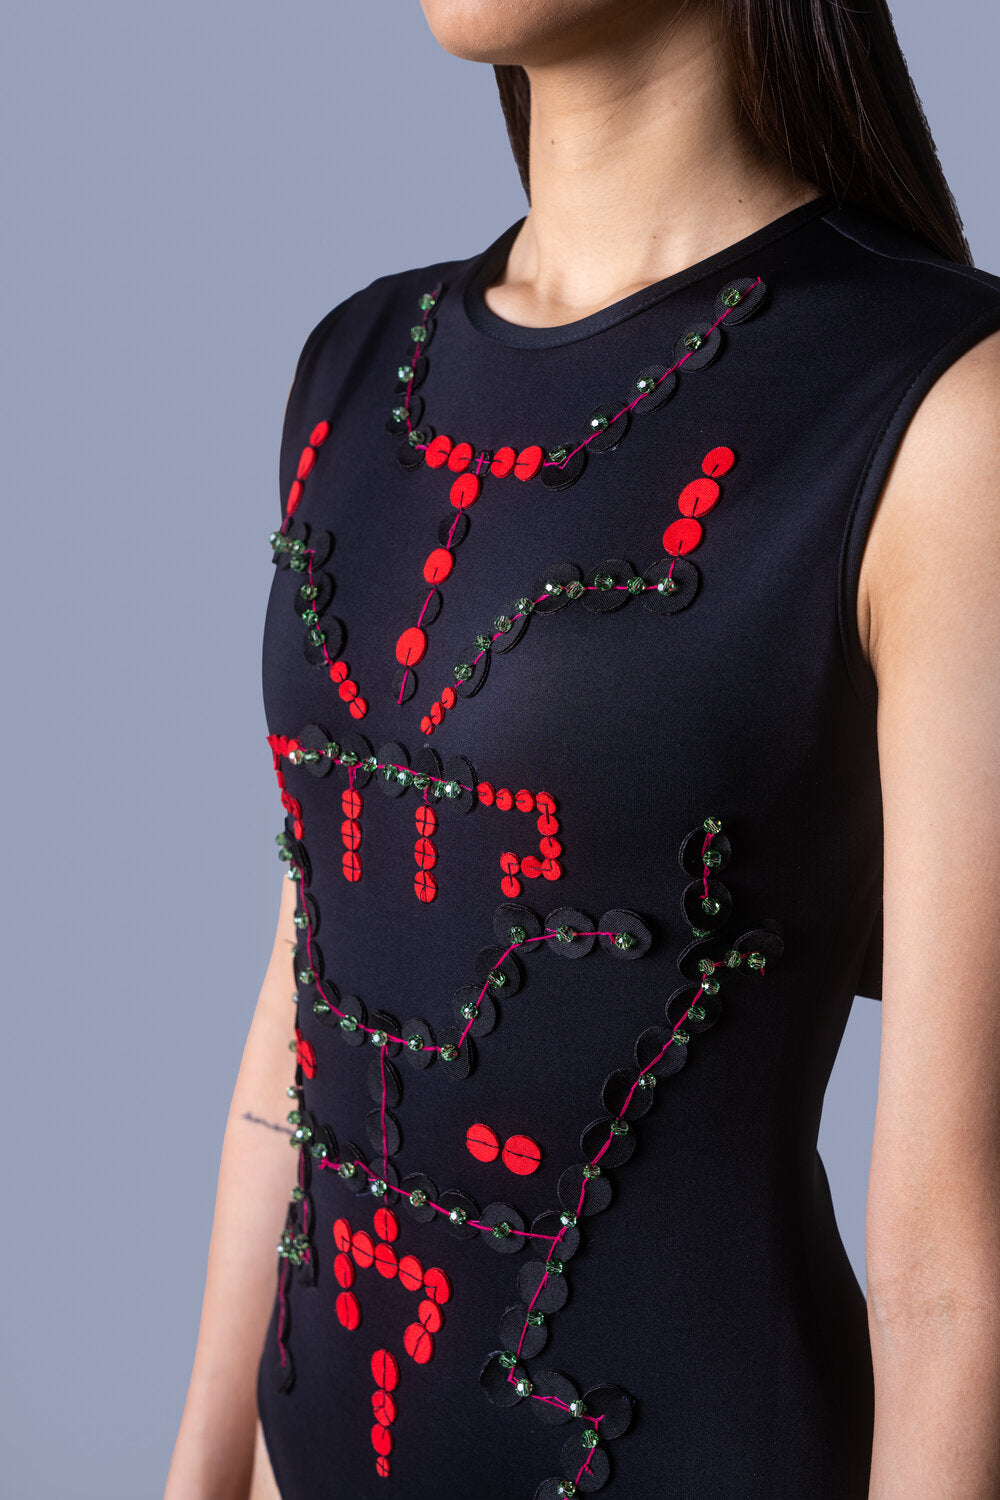 Bodysuit Embellished with Swarovski Crystals and Laser Cut Panels